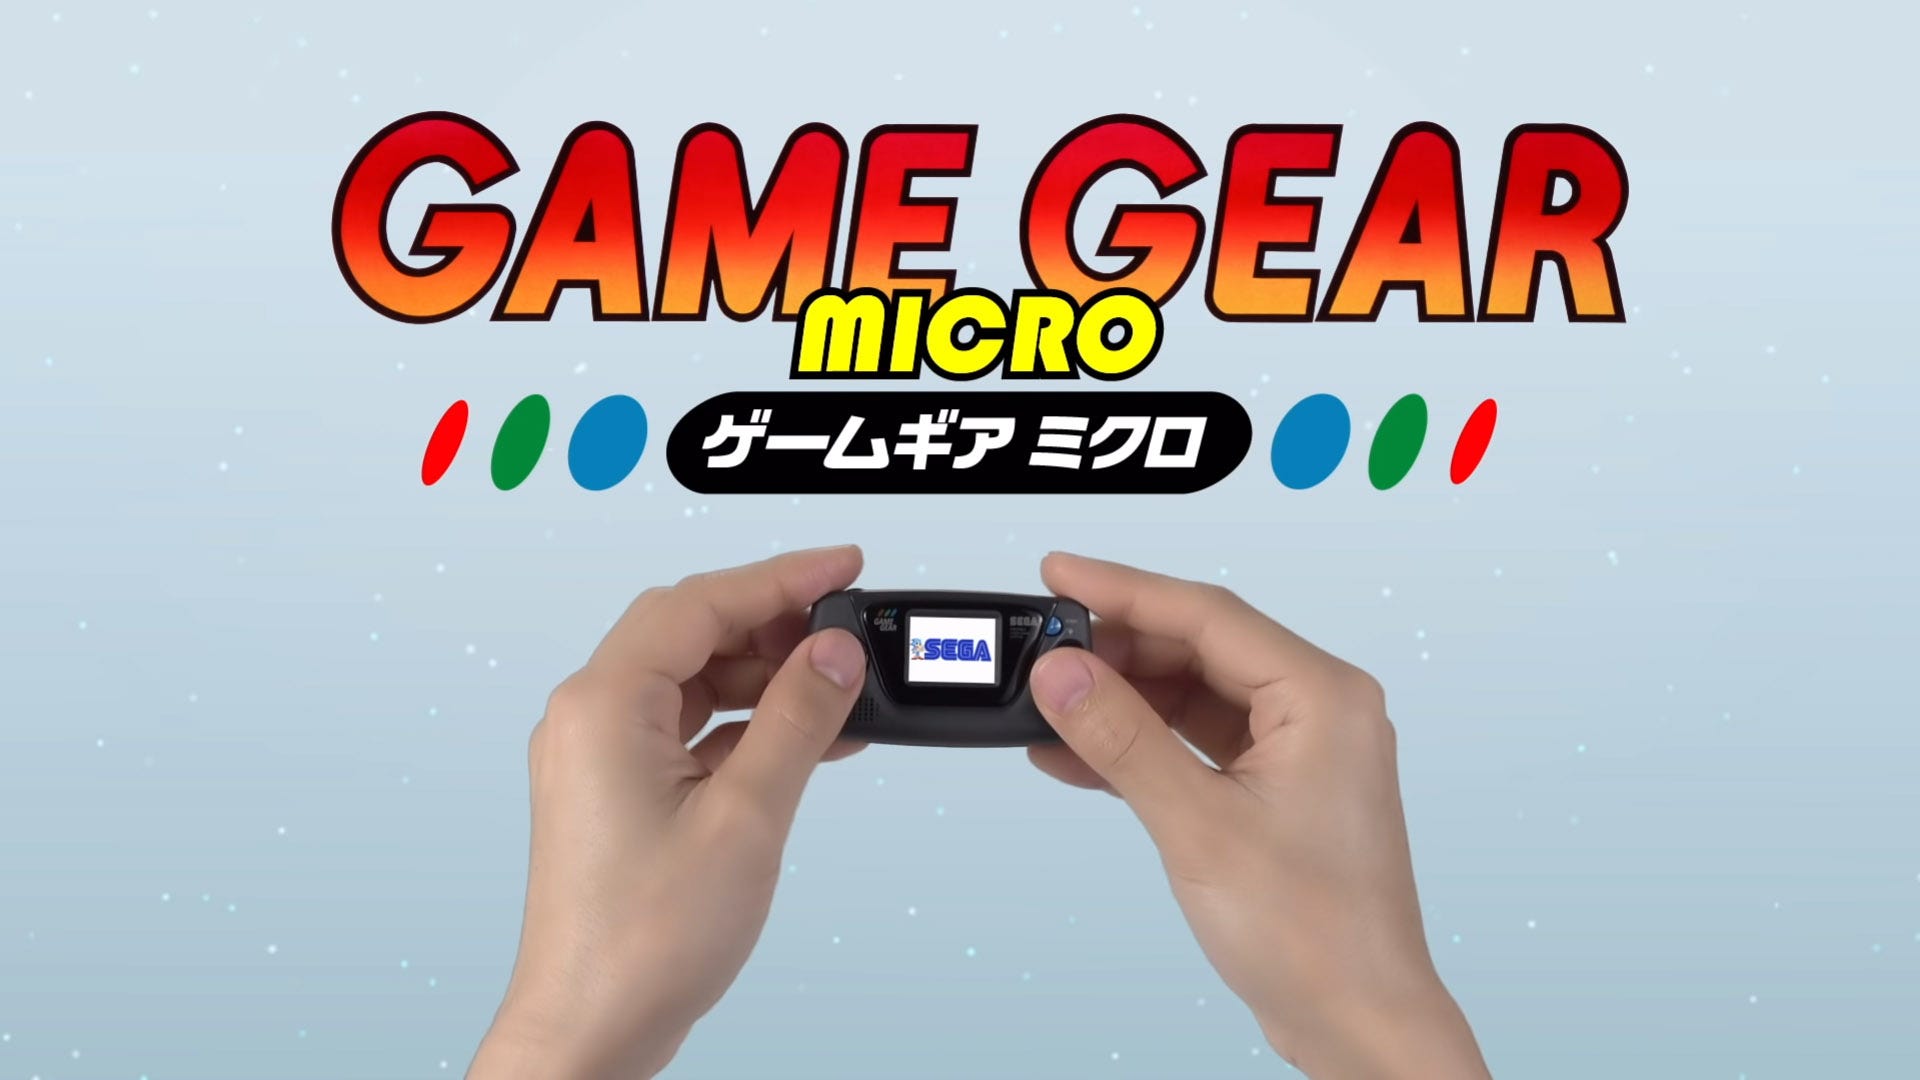 Game Gear của SEGA được hồi sinh với phiên bản “Micro” thực sự siêu nhỏ